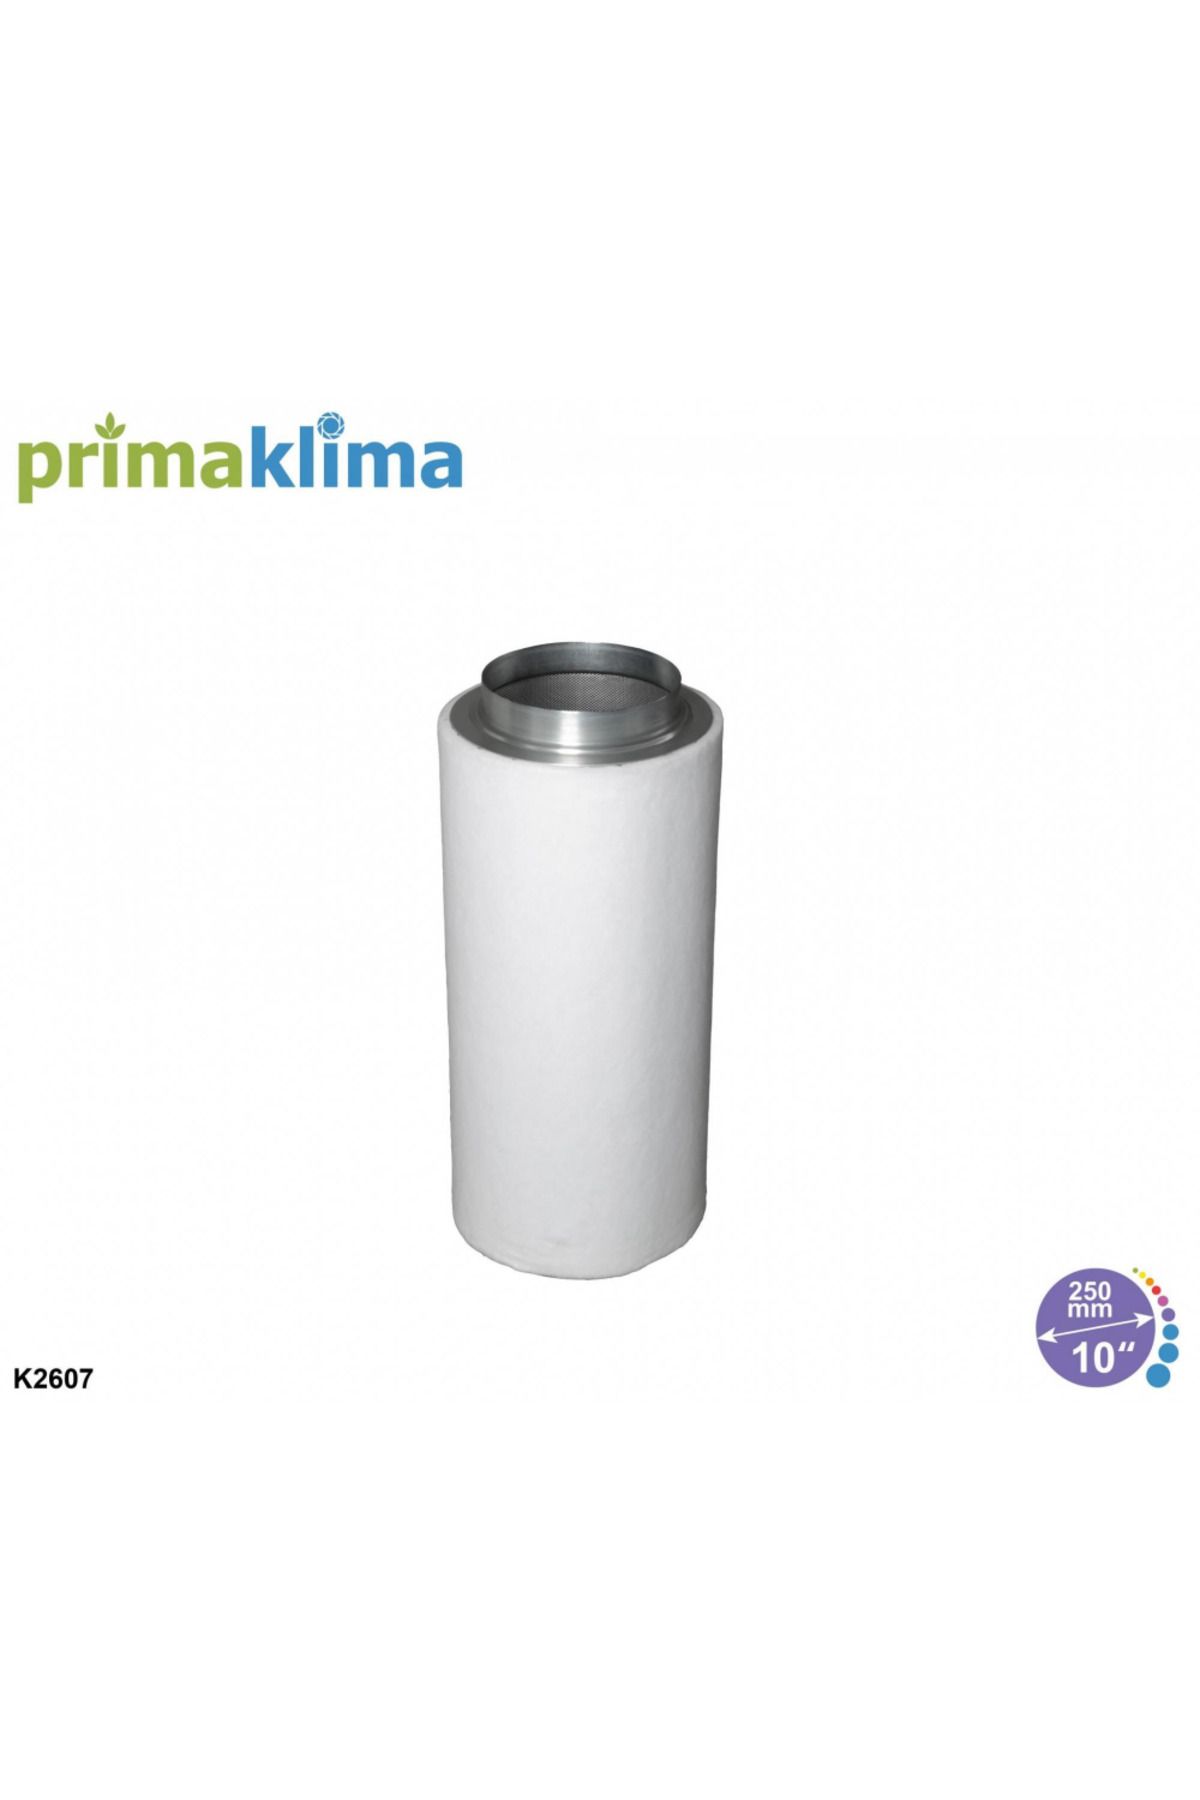 Prima Klima K2607-250 Karbon Filtre (2200 M3/h Max, 250mm Çap)